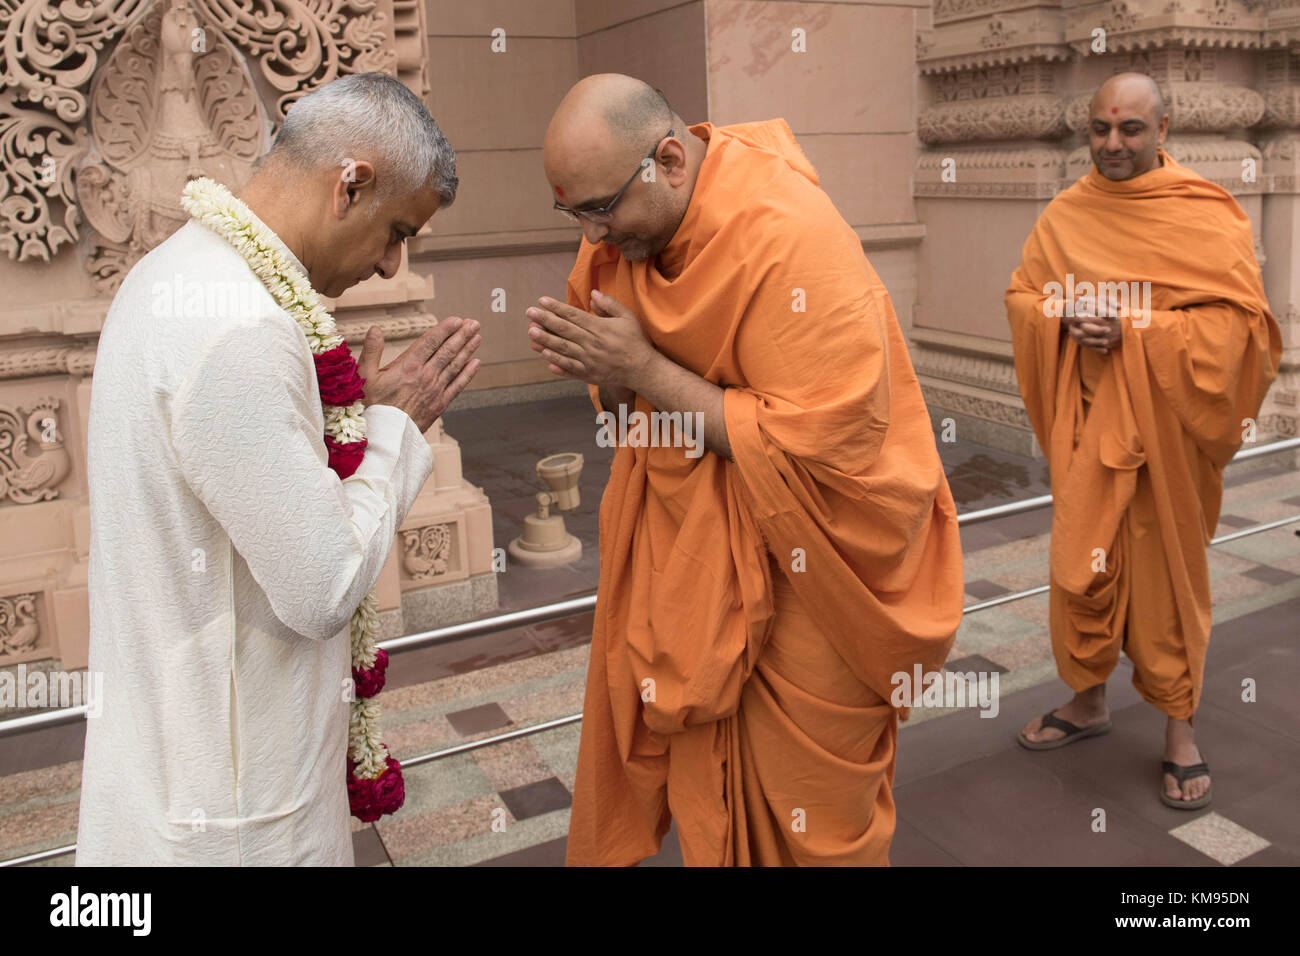 Il sindaco di Londra Sadiq Khan saluta sadhus - santi uomini - durante una visita al tempio di Akshardham a Delhi come parte dei suoi quattro giorni di viaggio in India. Esso è stato costruito dalla stessa setta di induismo che ha costruito il tempio a Neasden, a nord ovest di Londra. Foto Stock